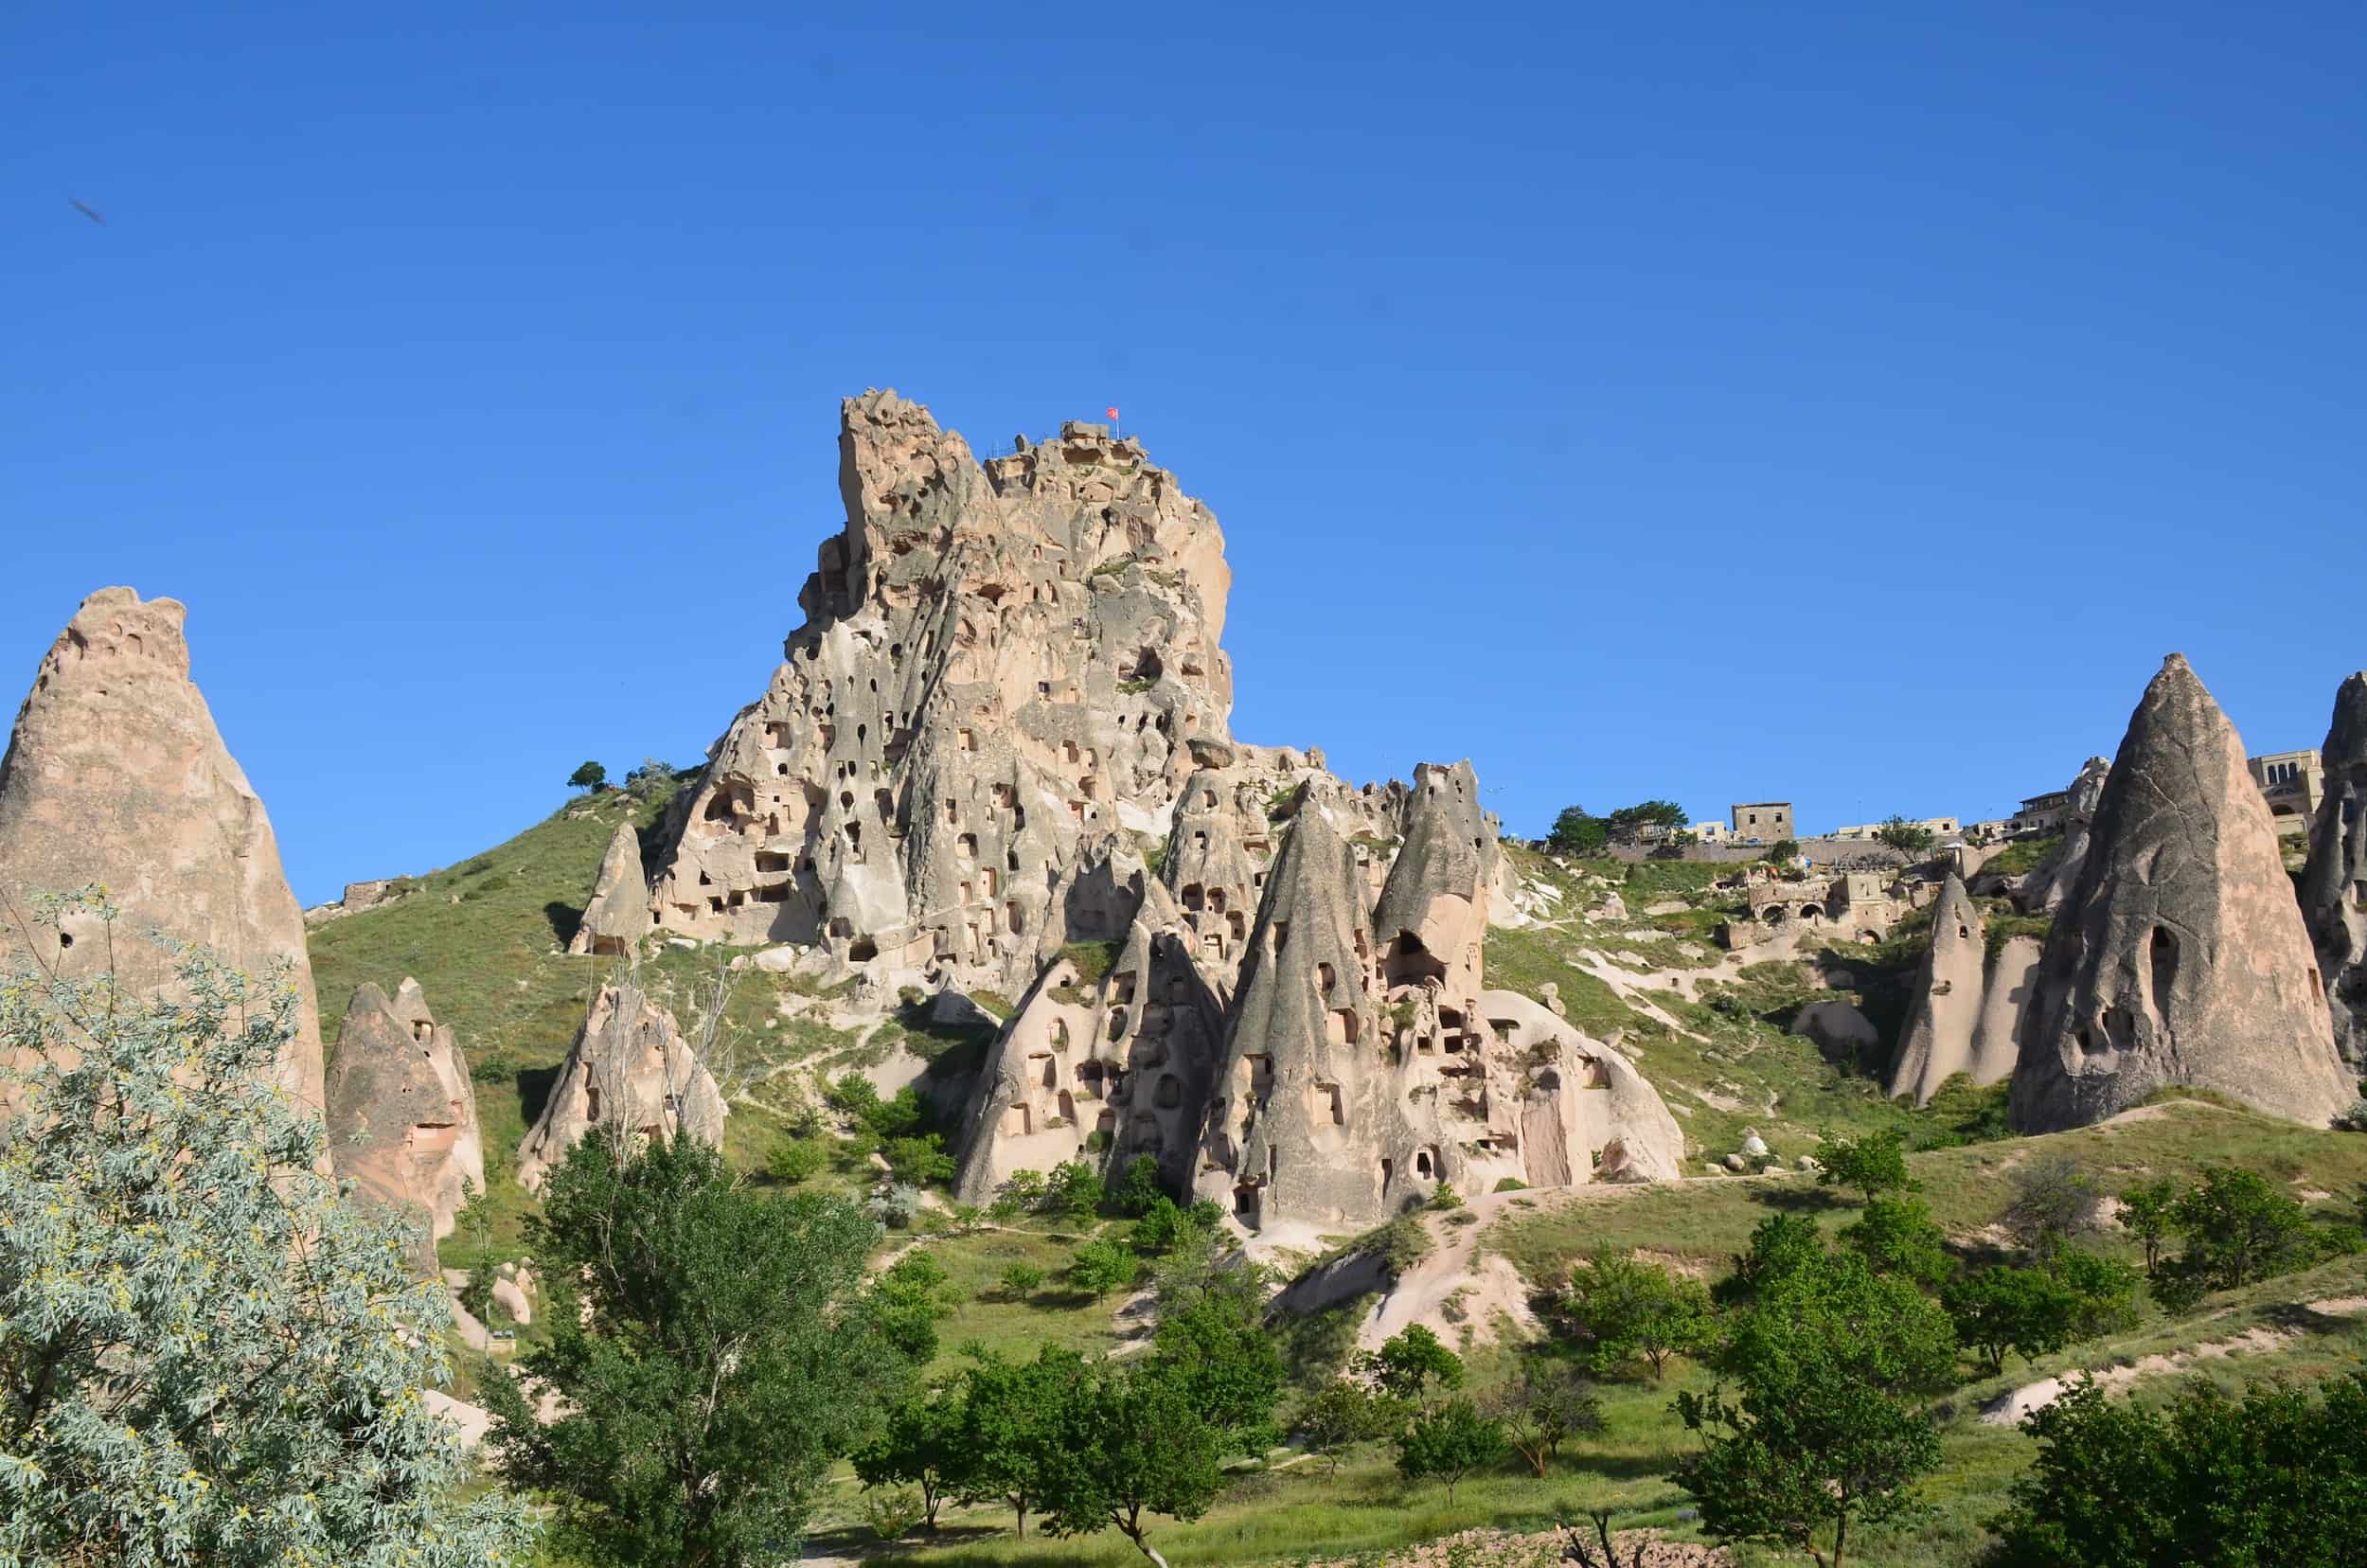 Üçhisar Castle Valley in Cappadocia, Turkey